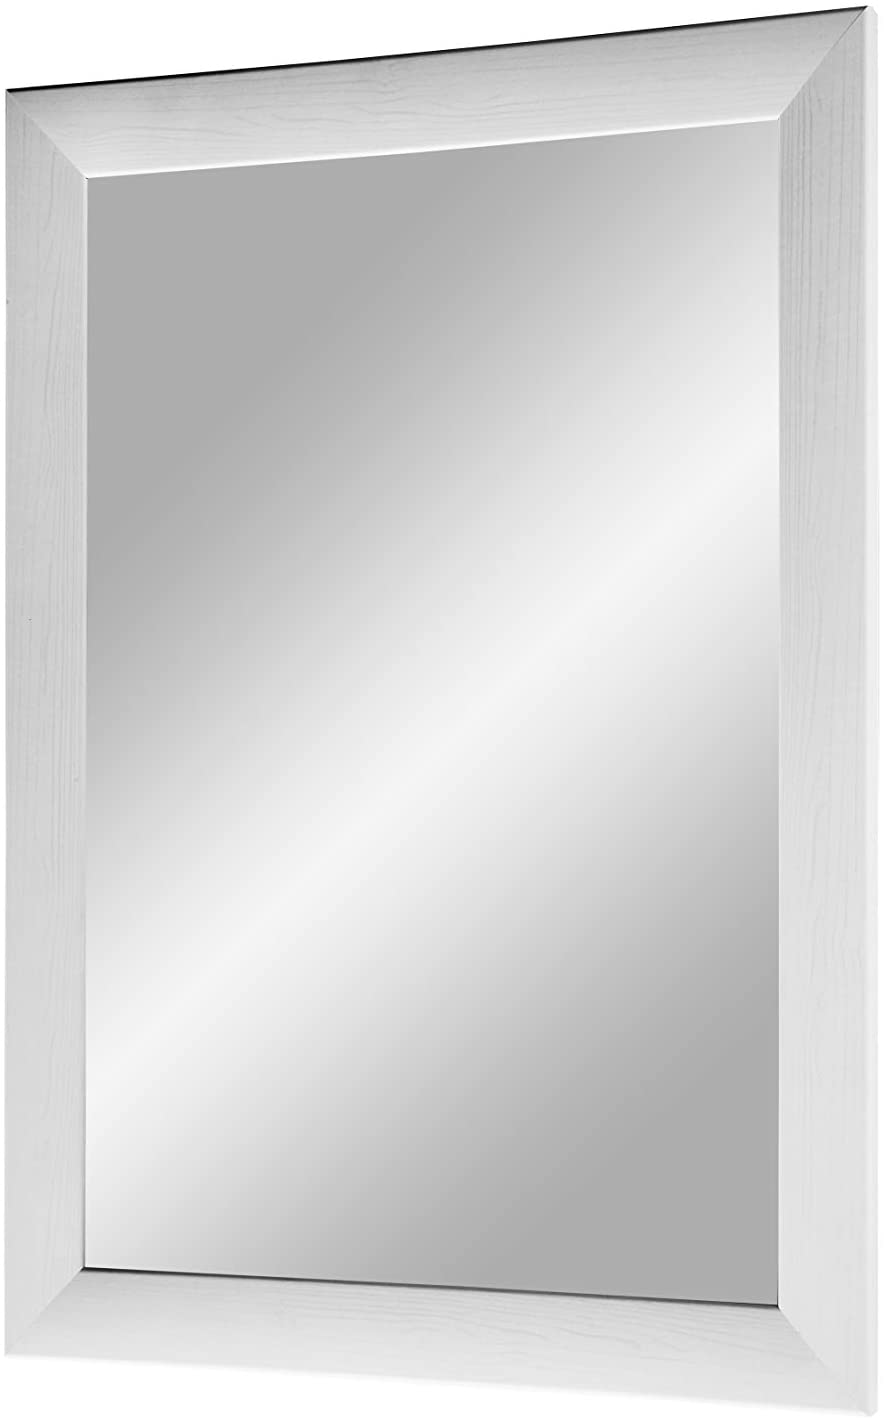 EXCLUSIV Wandspiegel nach Maß (Kiefer-Weiß), Maßgefertigter Spiegelrahmen inkl. Spiegel und stabiler Rückwand mit Aufhängern